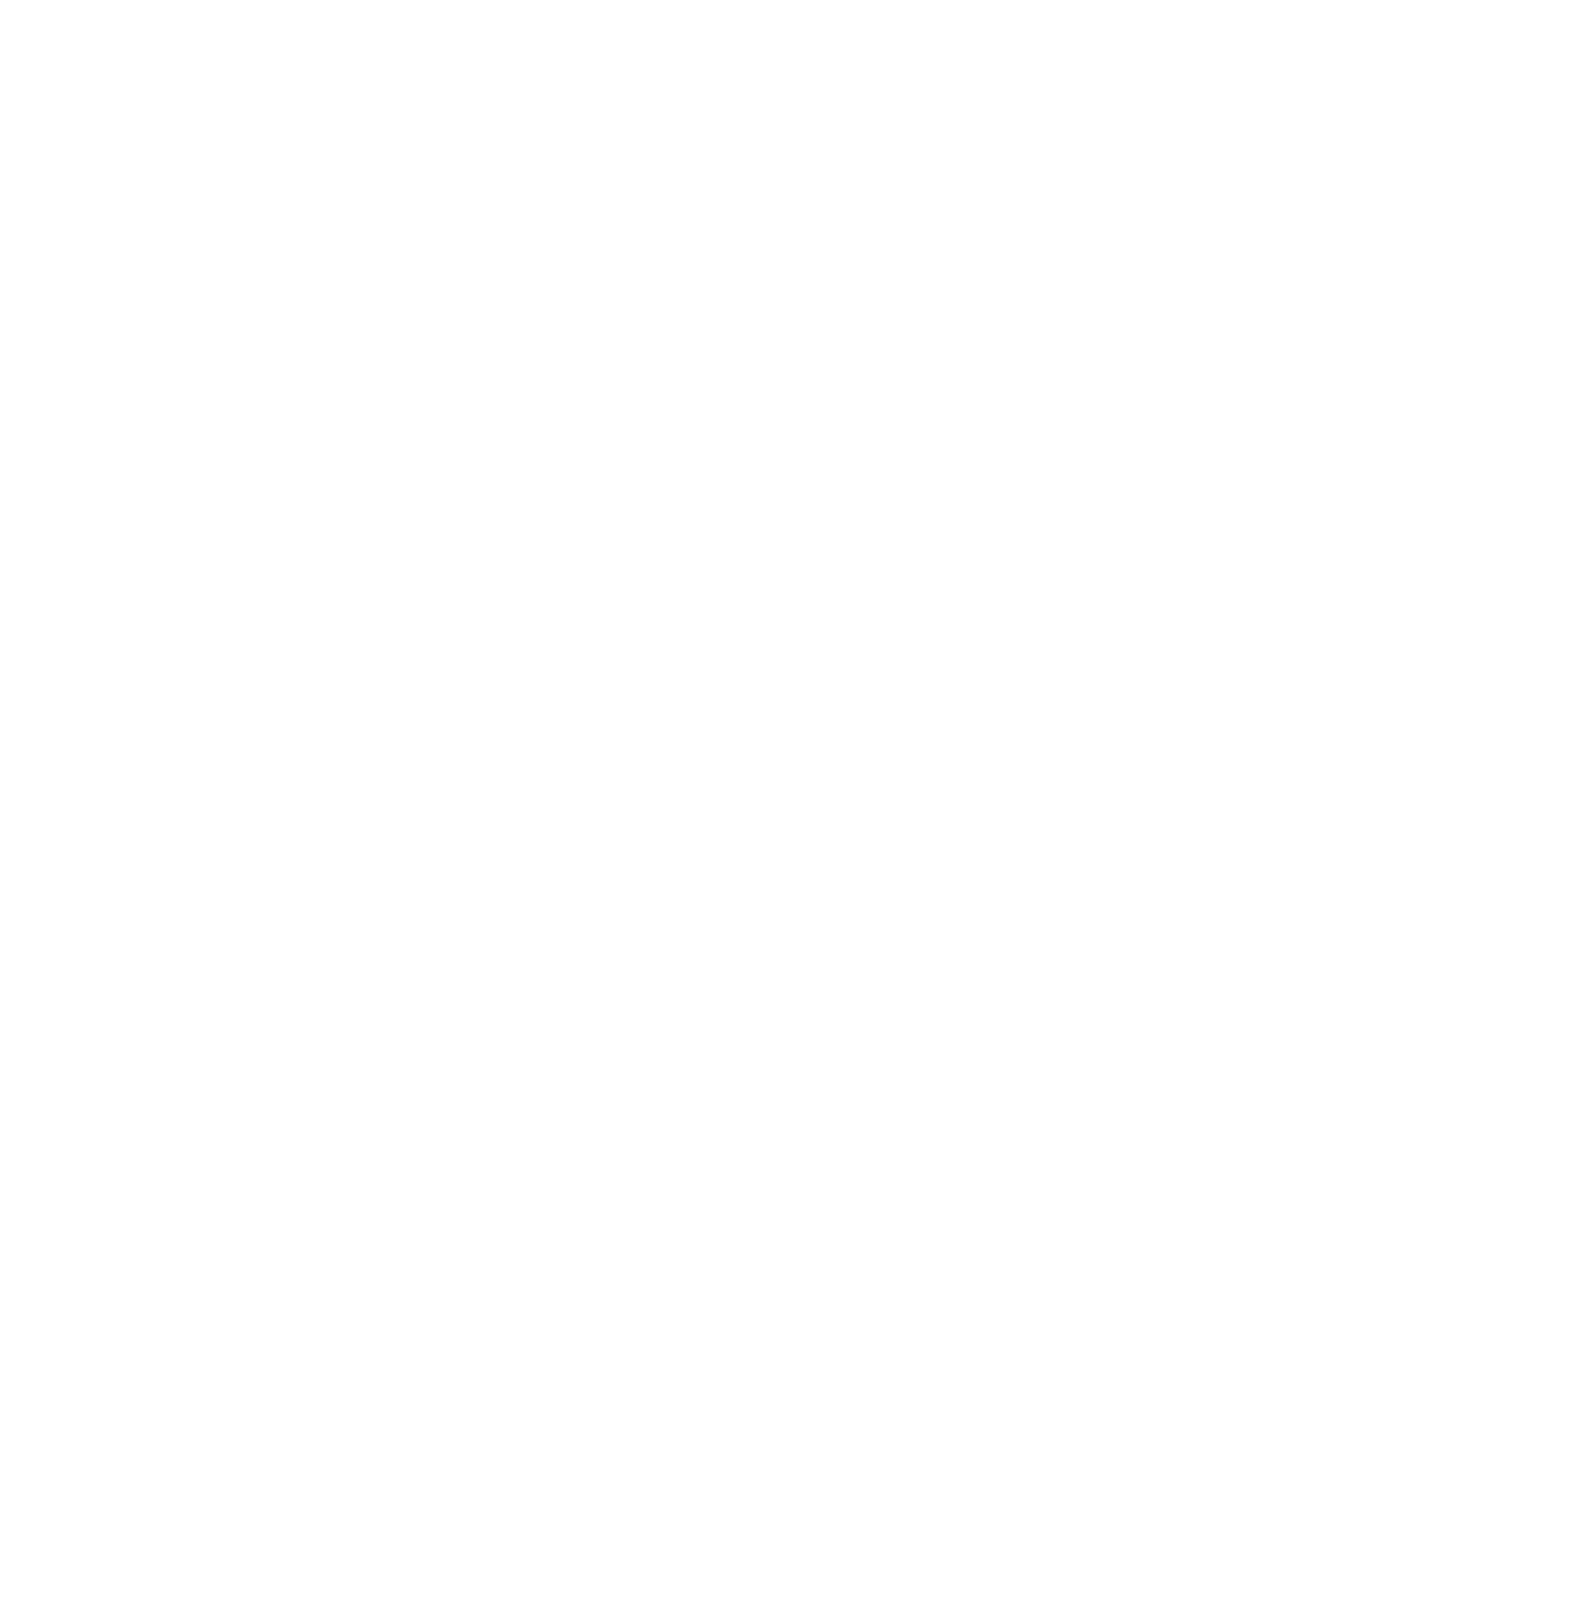 Osez l'agriculture en Occitanie